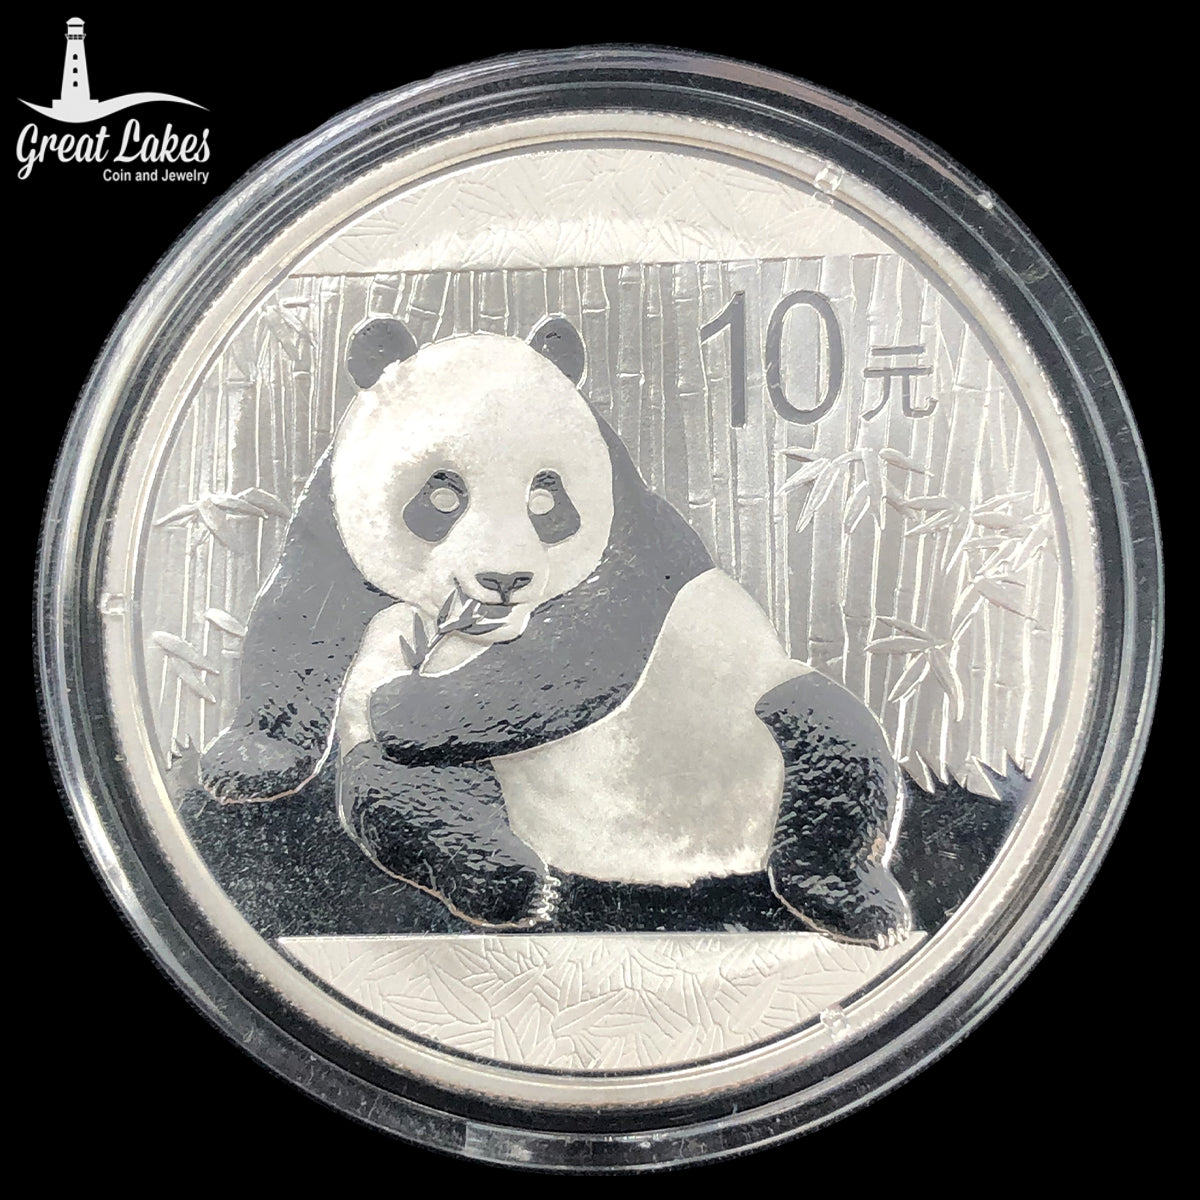 2015 Chinese 1 oz Silver Panda